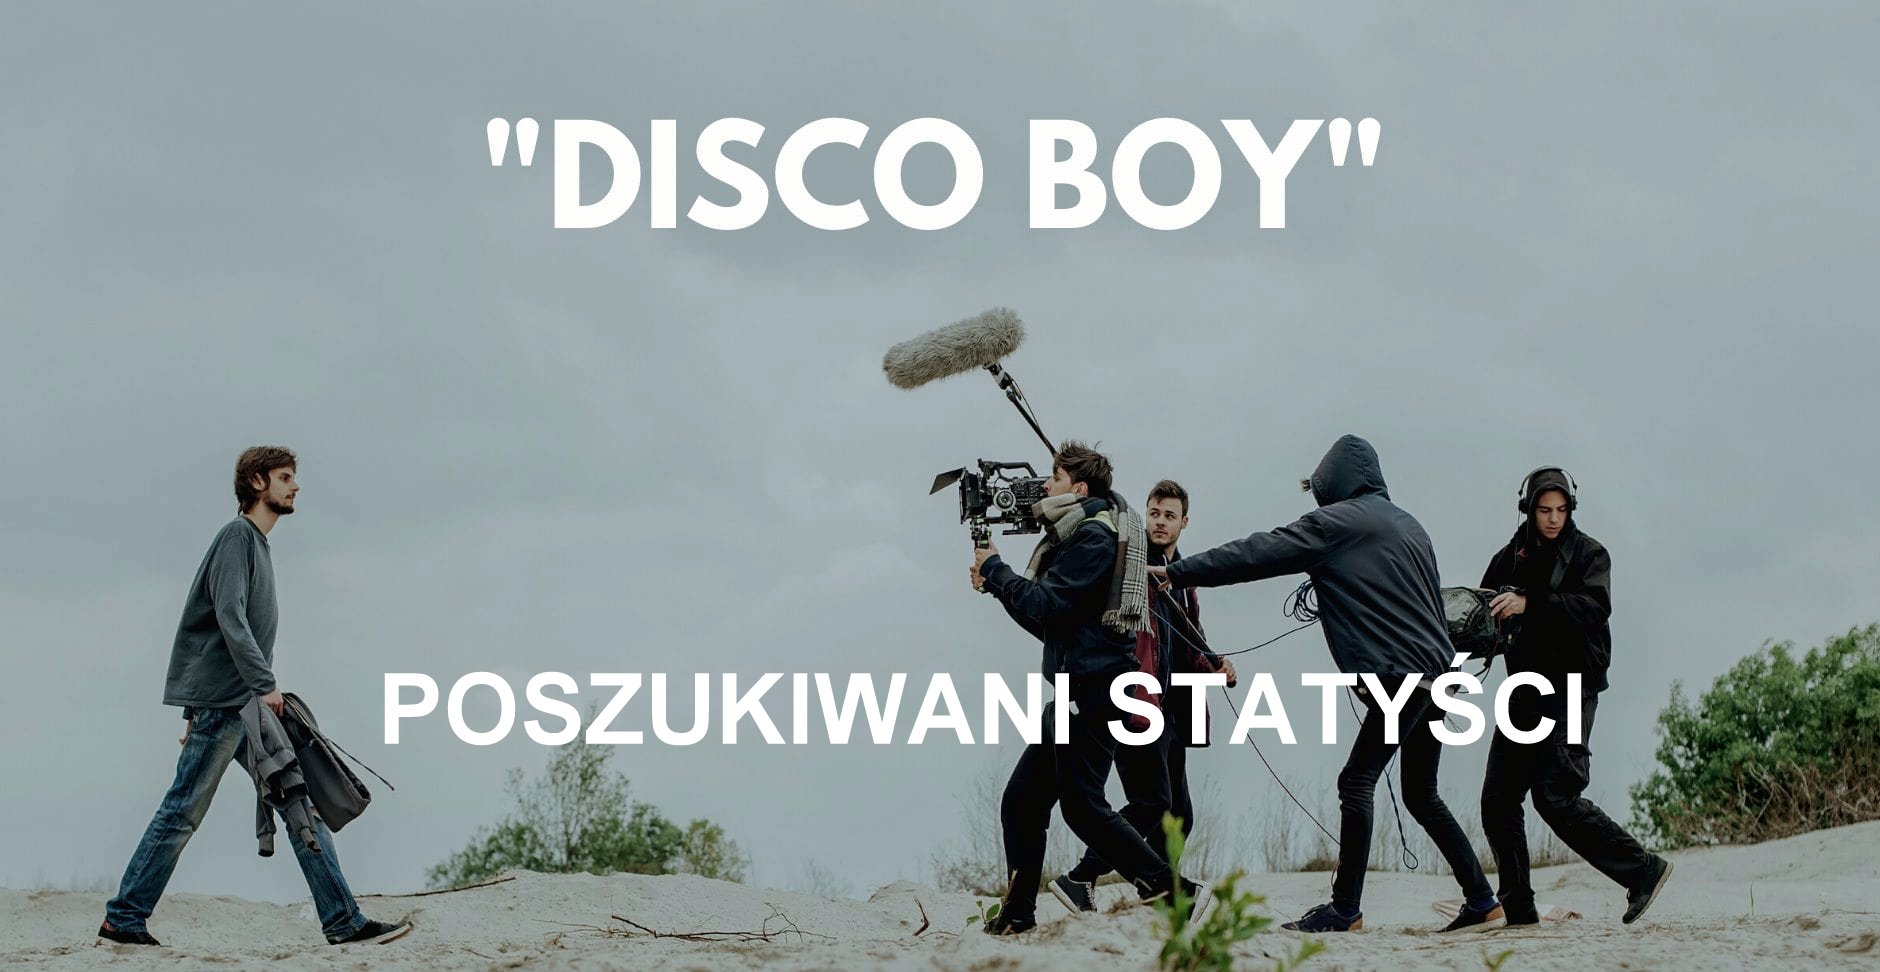 PILNIE Poszukiwani statyści do filmu "Disco Boy". Zdjęcia kręcone będą jutro! - Zdjęcie główne